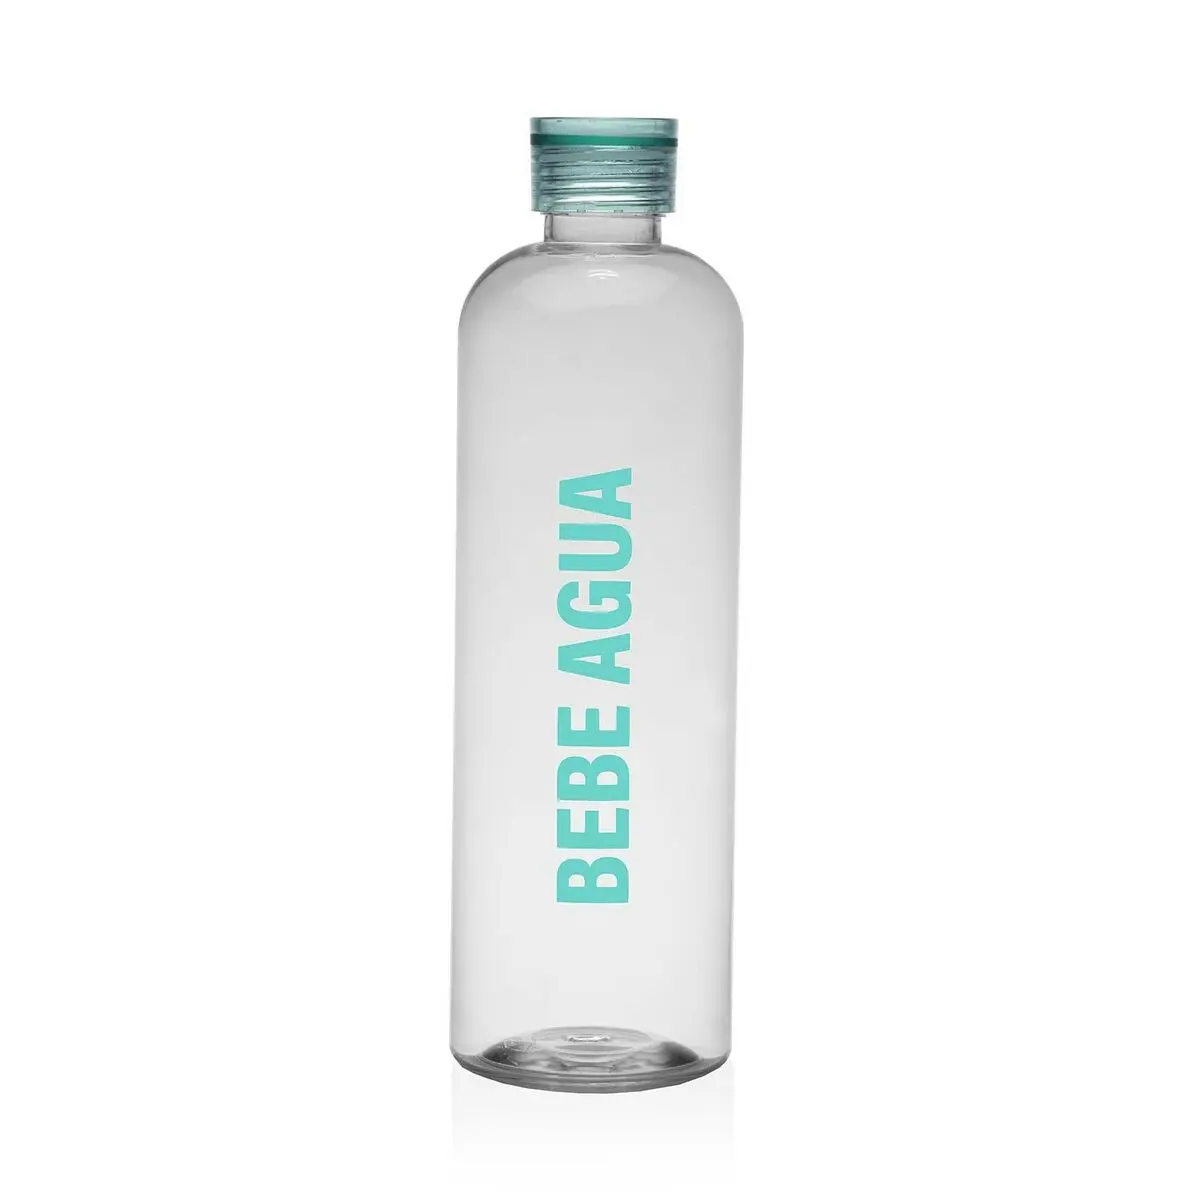 Bottiglia d'acqua Versa Menta Acciaio polistirene 1,5 L 9 x 29 x 9 cm